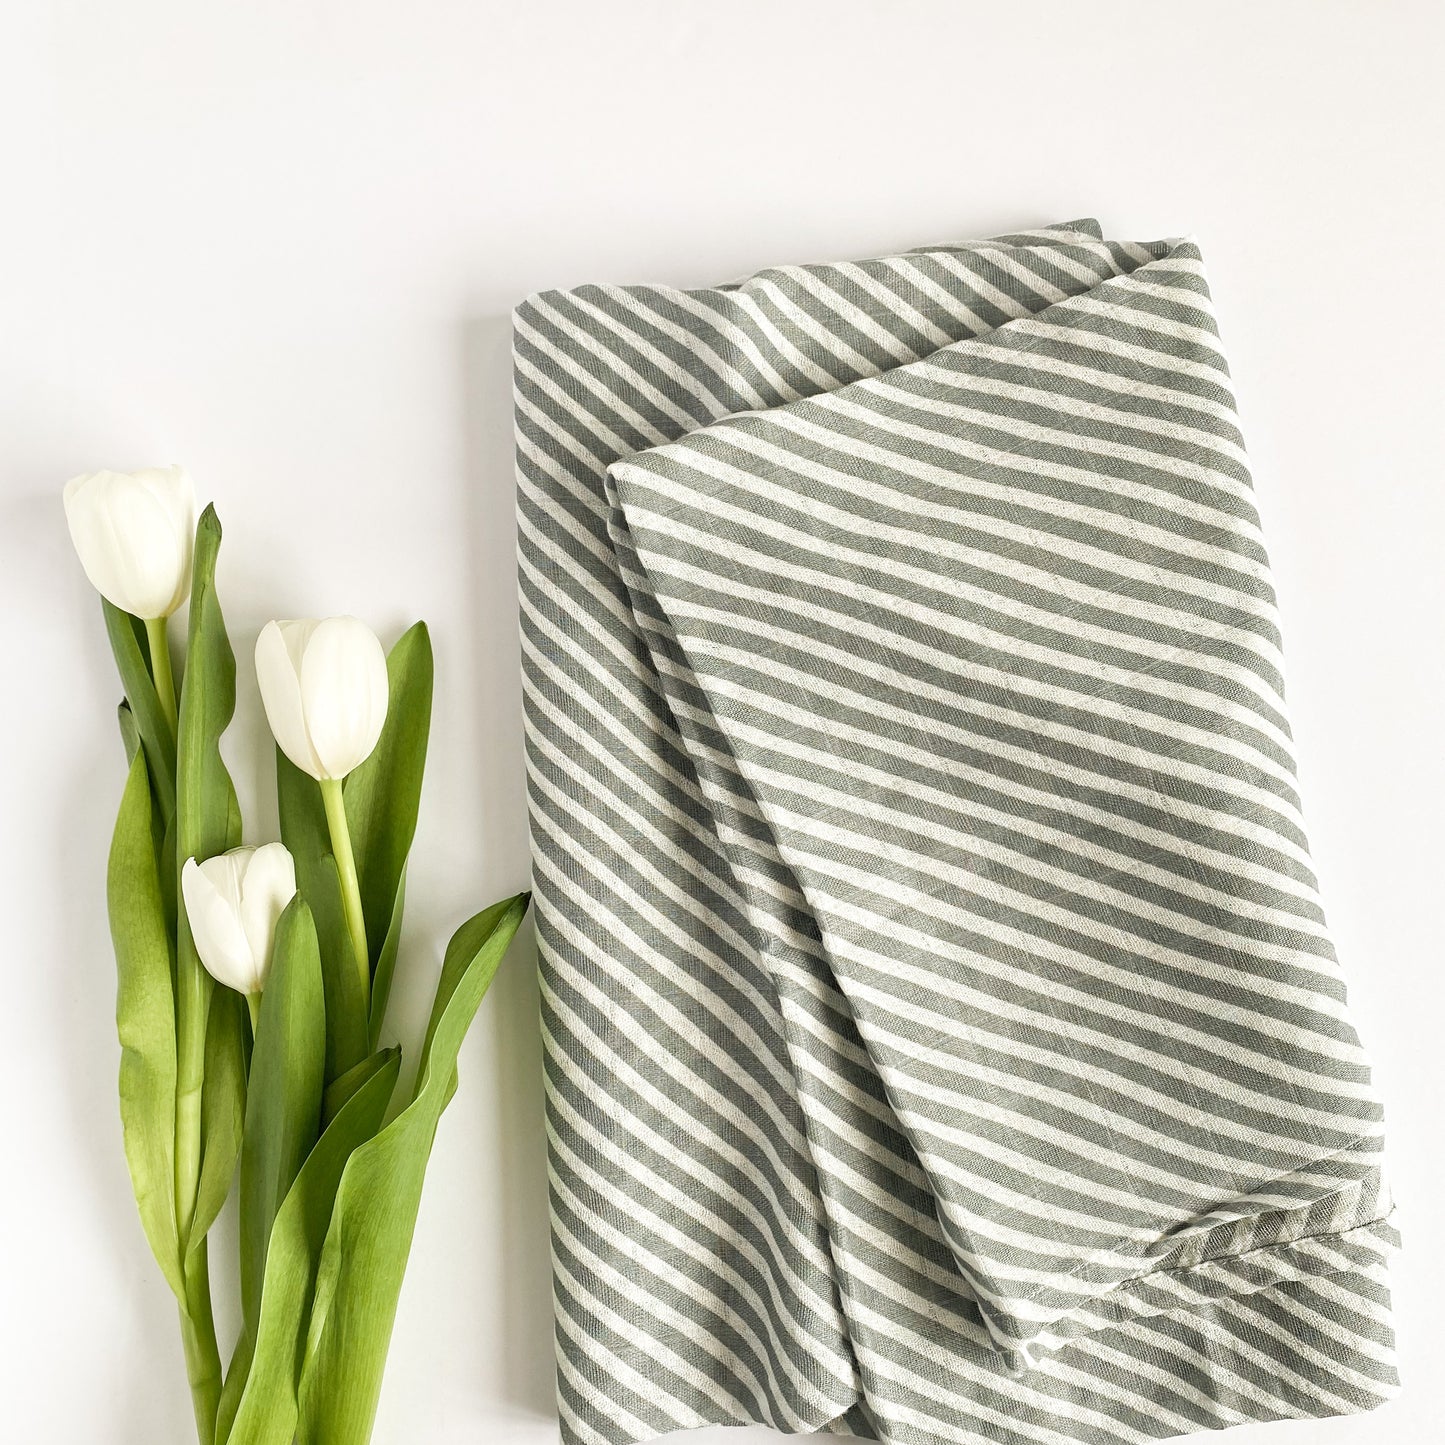 Striped Muslin Blanket